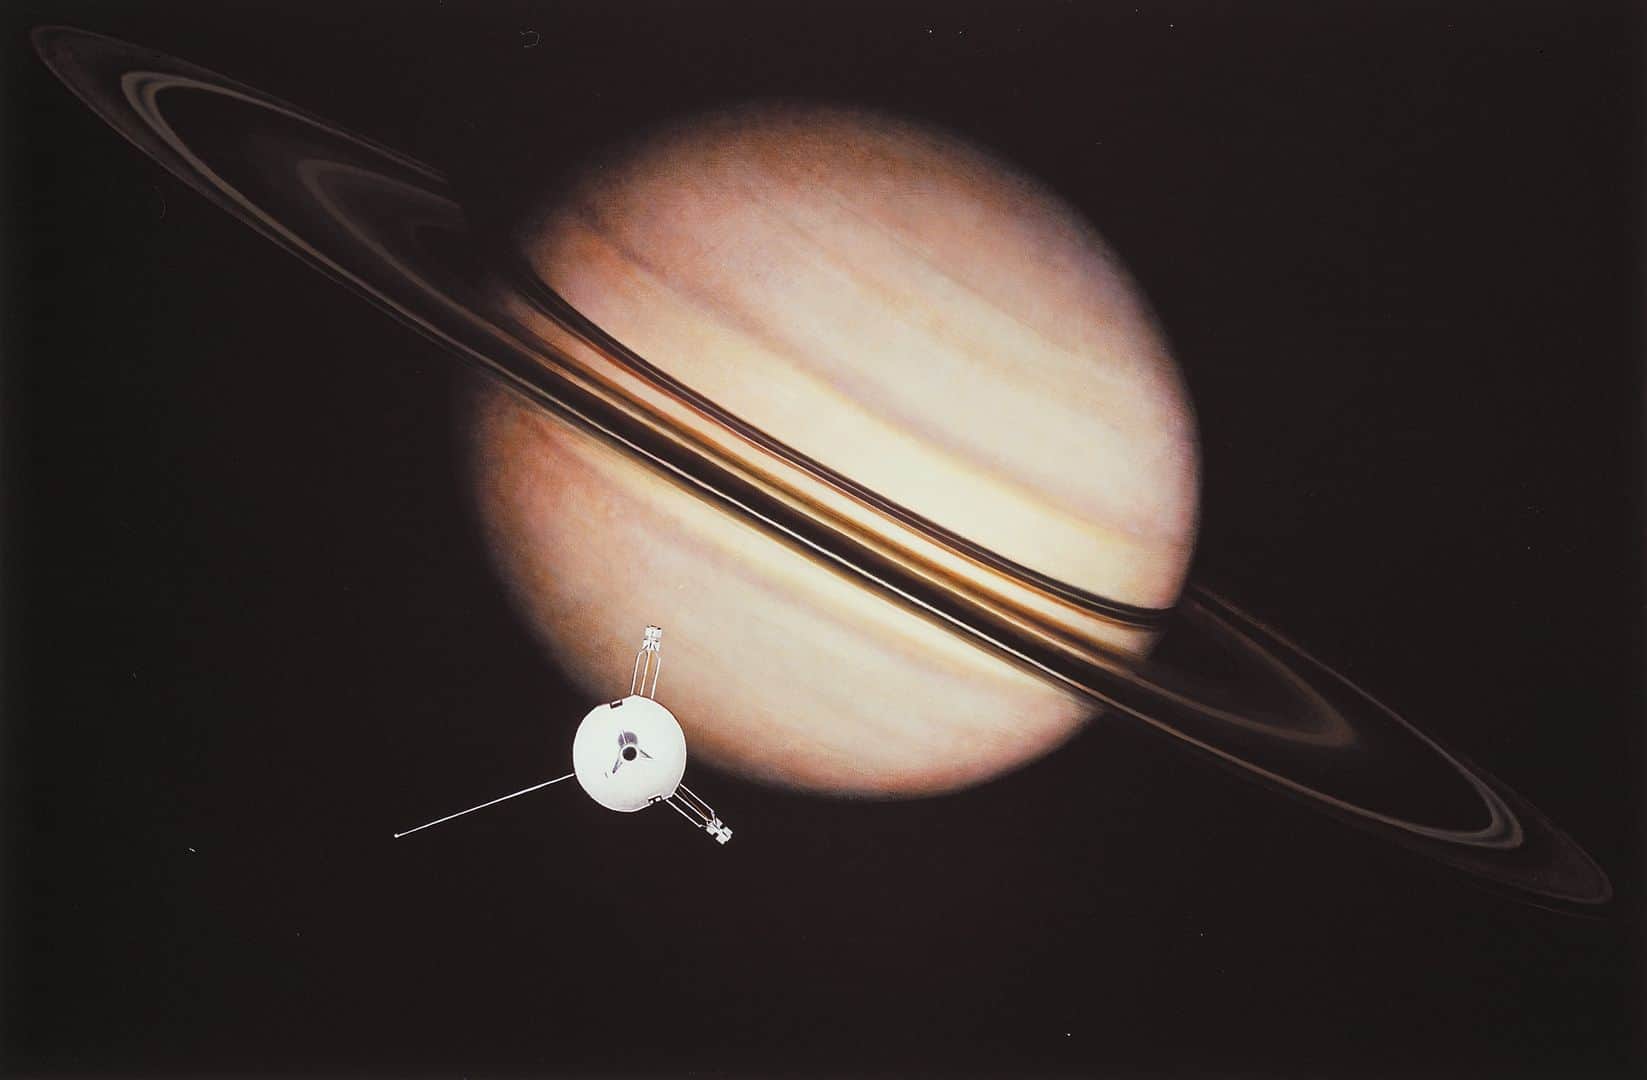 Fakta O Saturnu, Pioneer 11